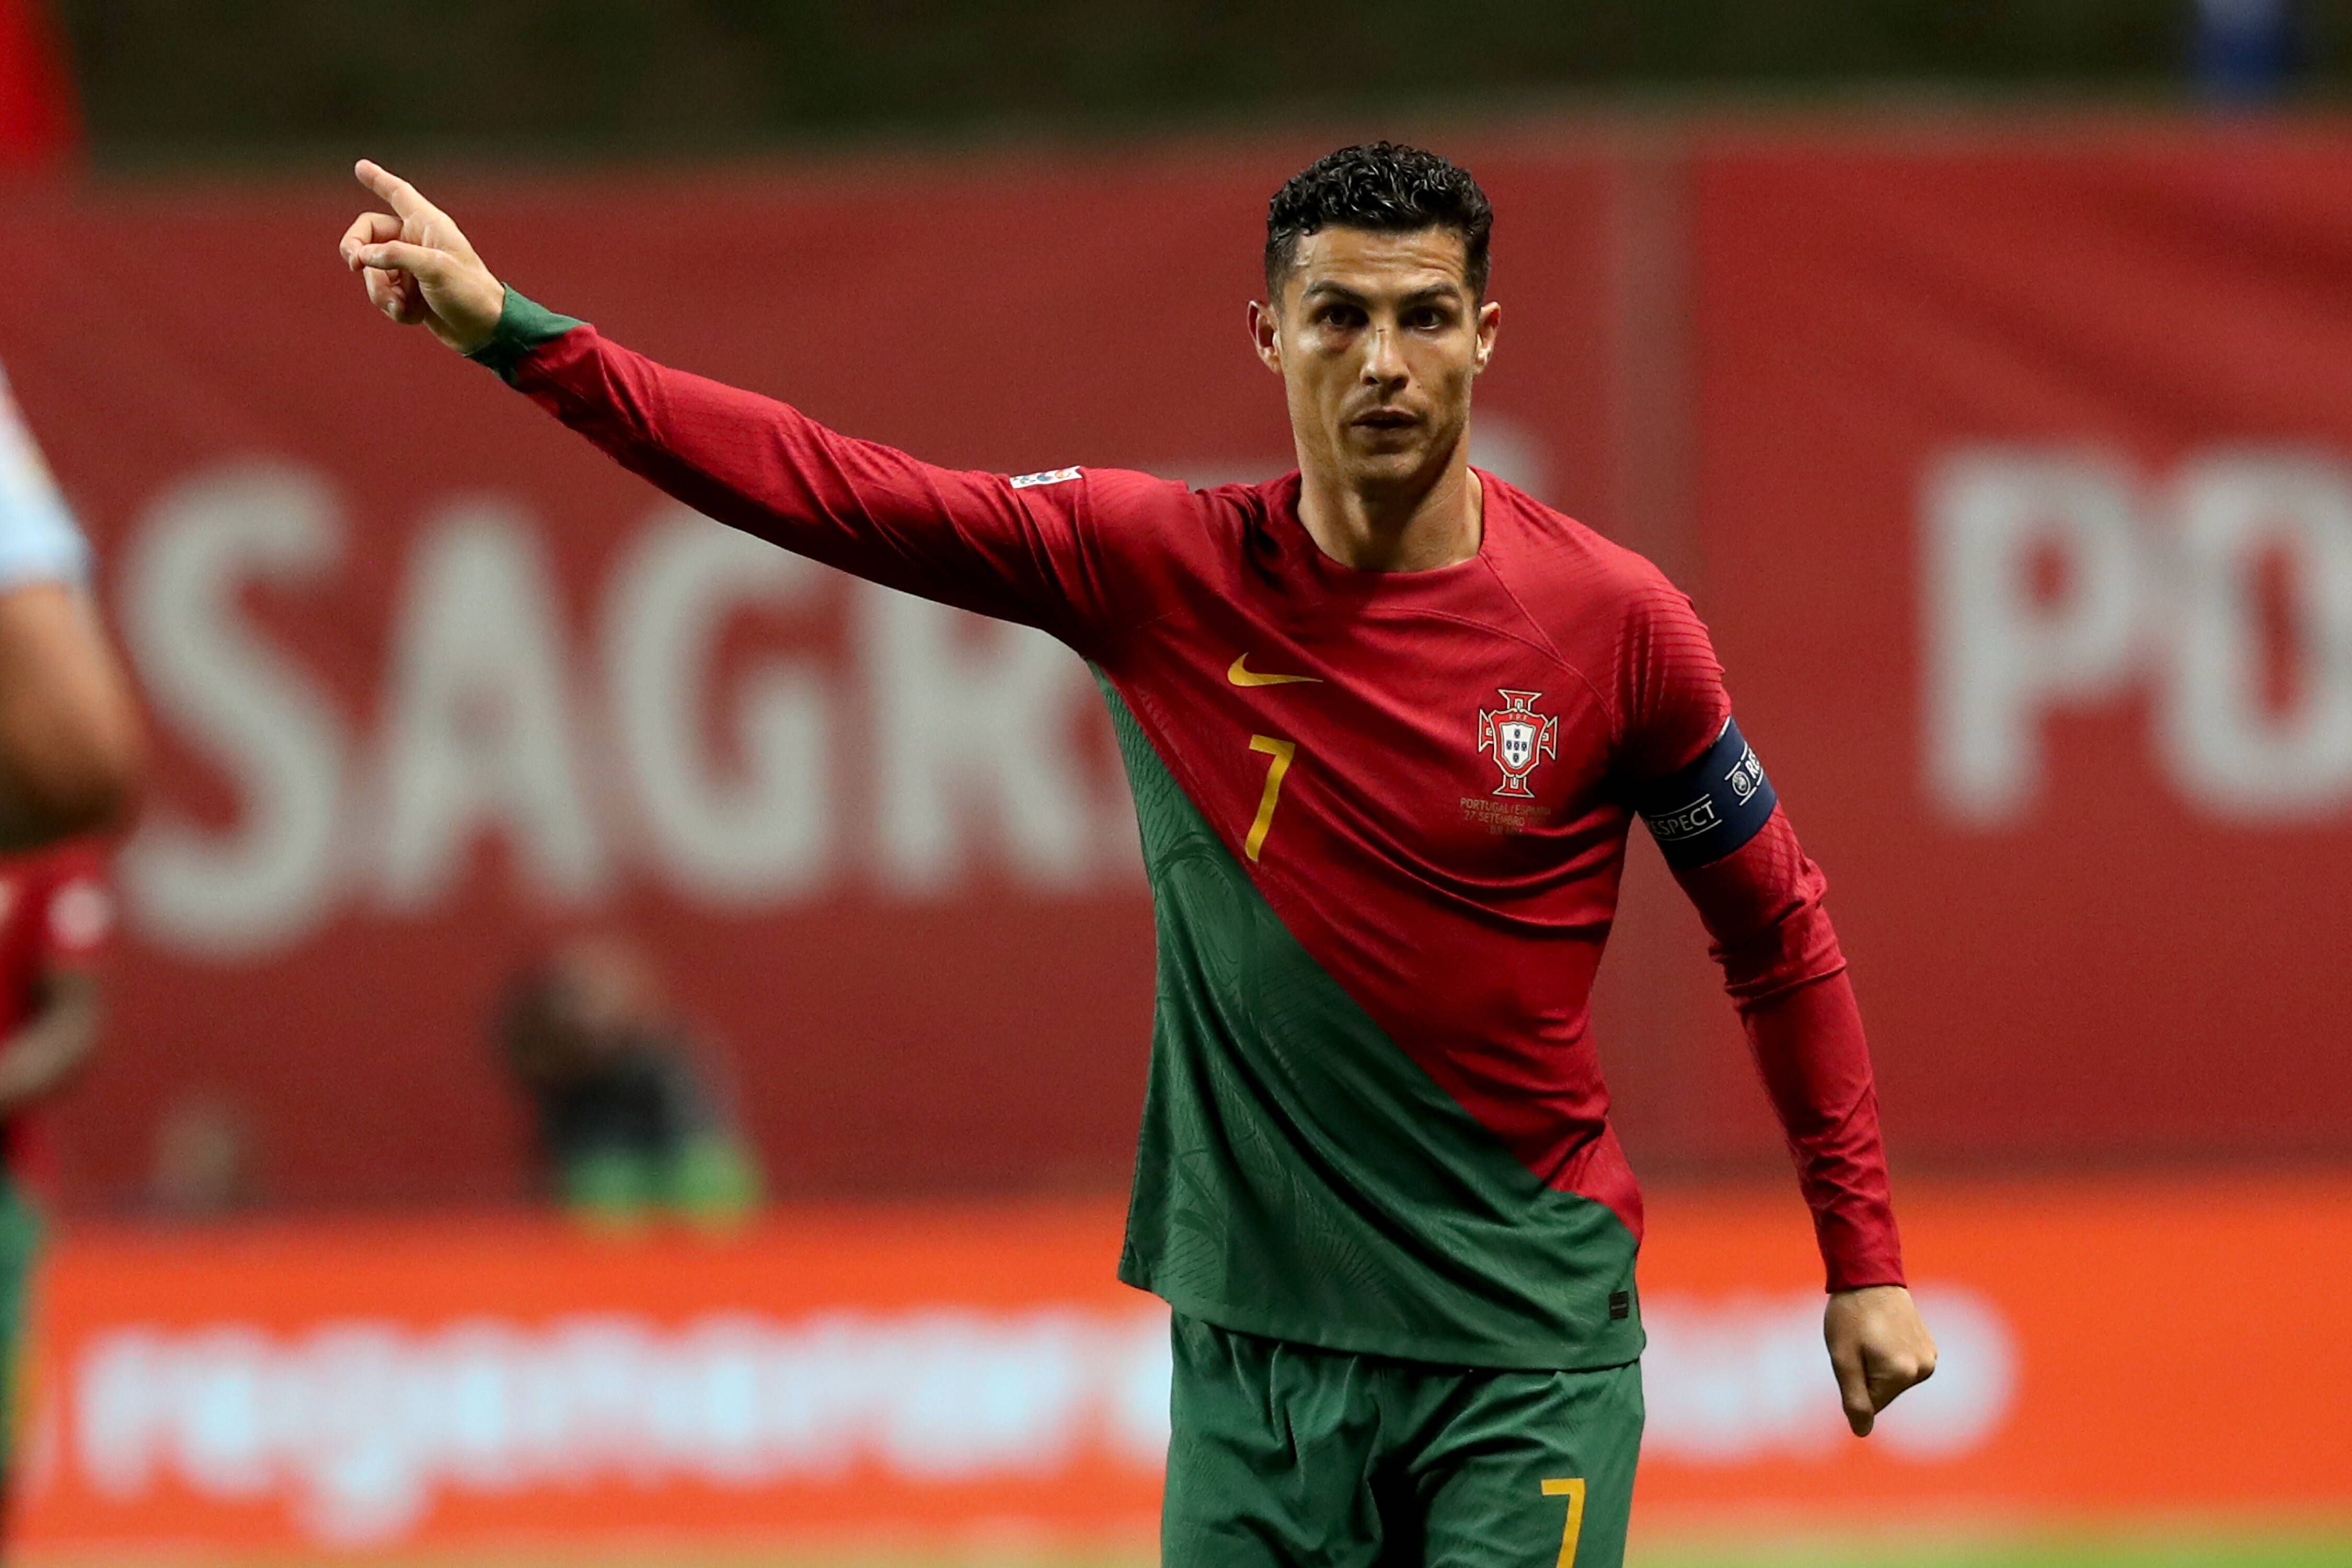 ГРУПА H: От най-слабата Португалия в ерата „Роналдо“ може да се очаква всичко